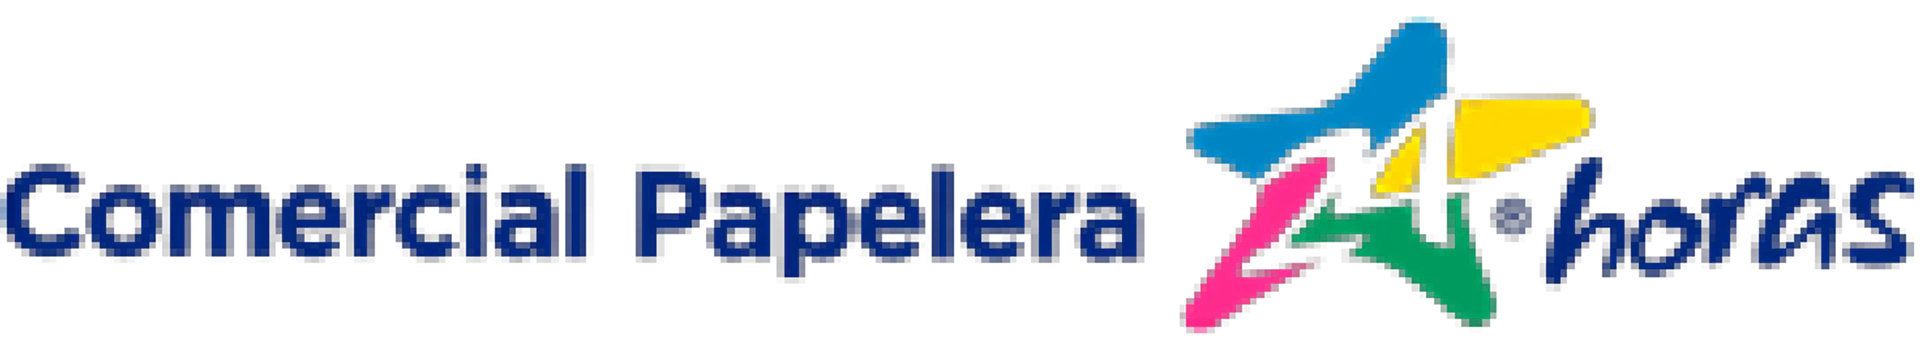 COMERCIAL PAPELERA logo de catálogo